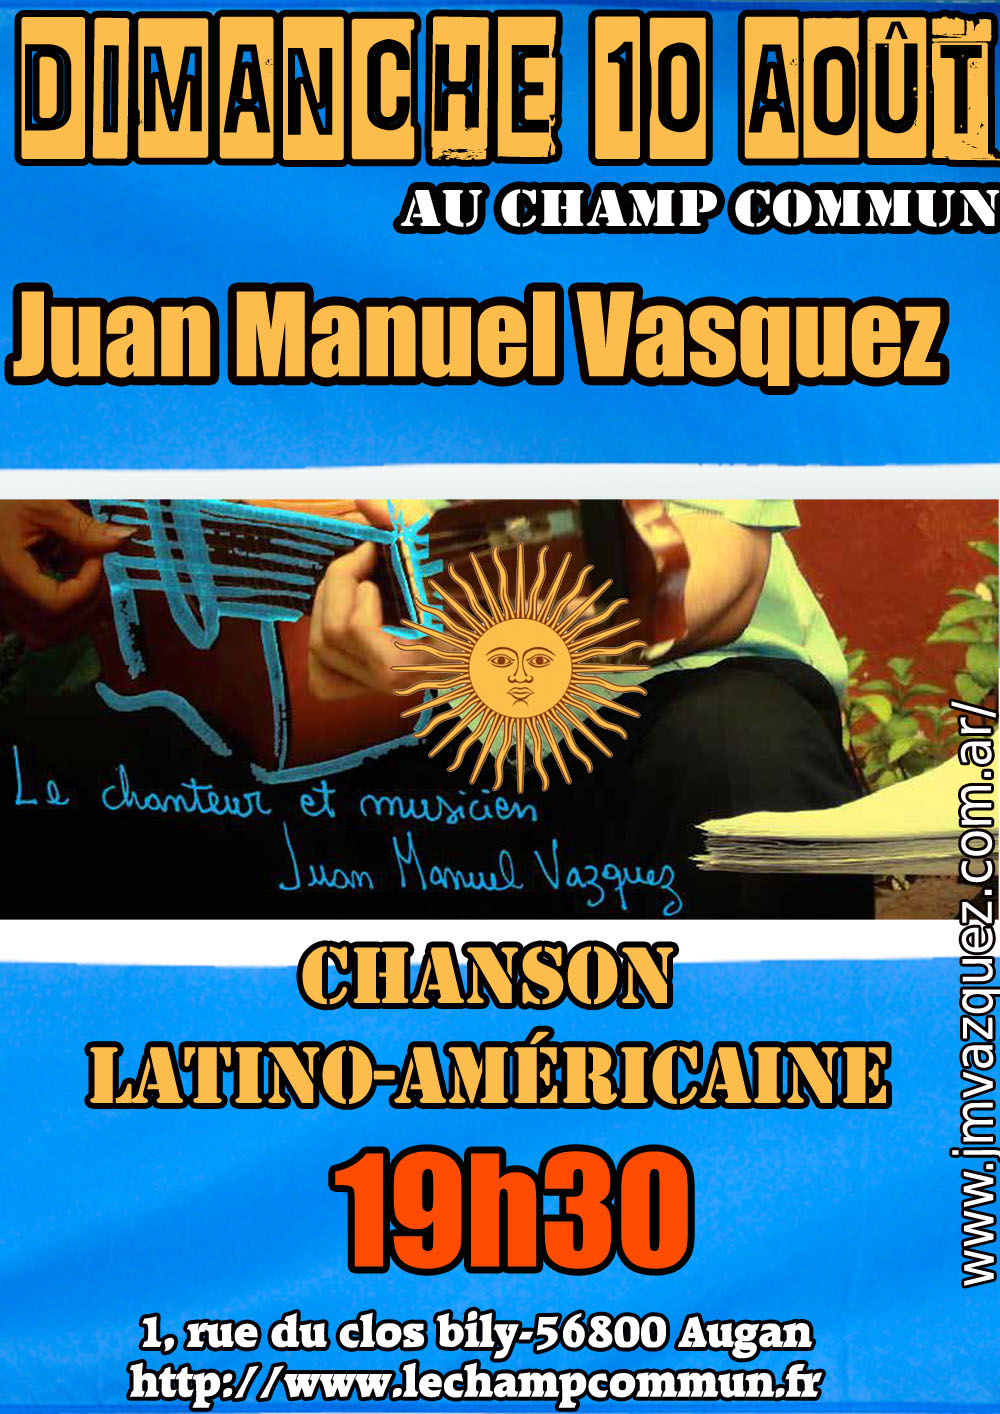 Dimanche 10 Août à 19h30 au Champ commun - musique latino-américaine avec Juan Manuel Vasquez